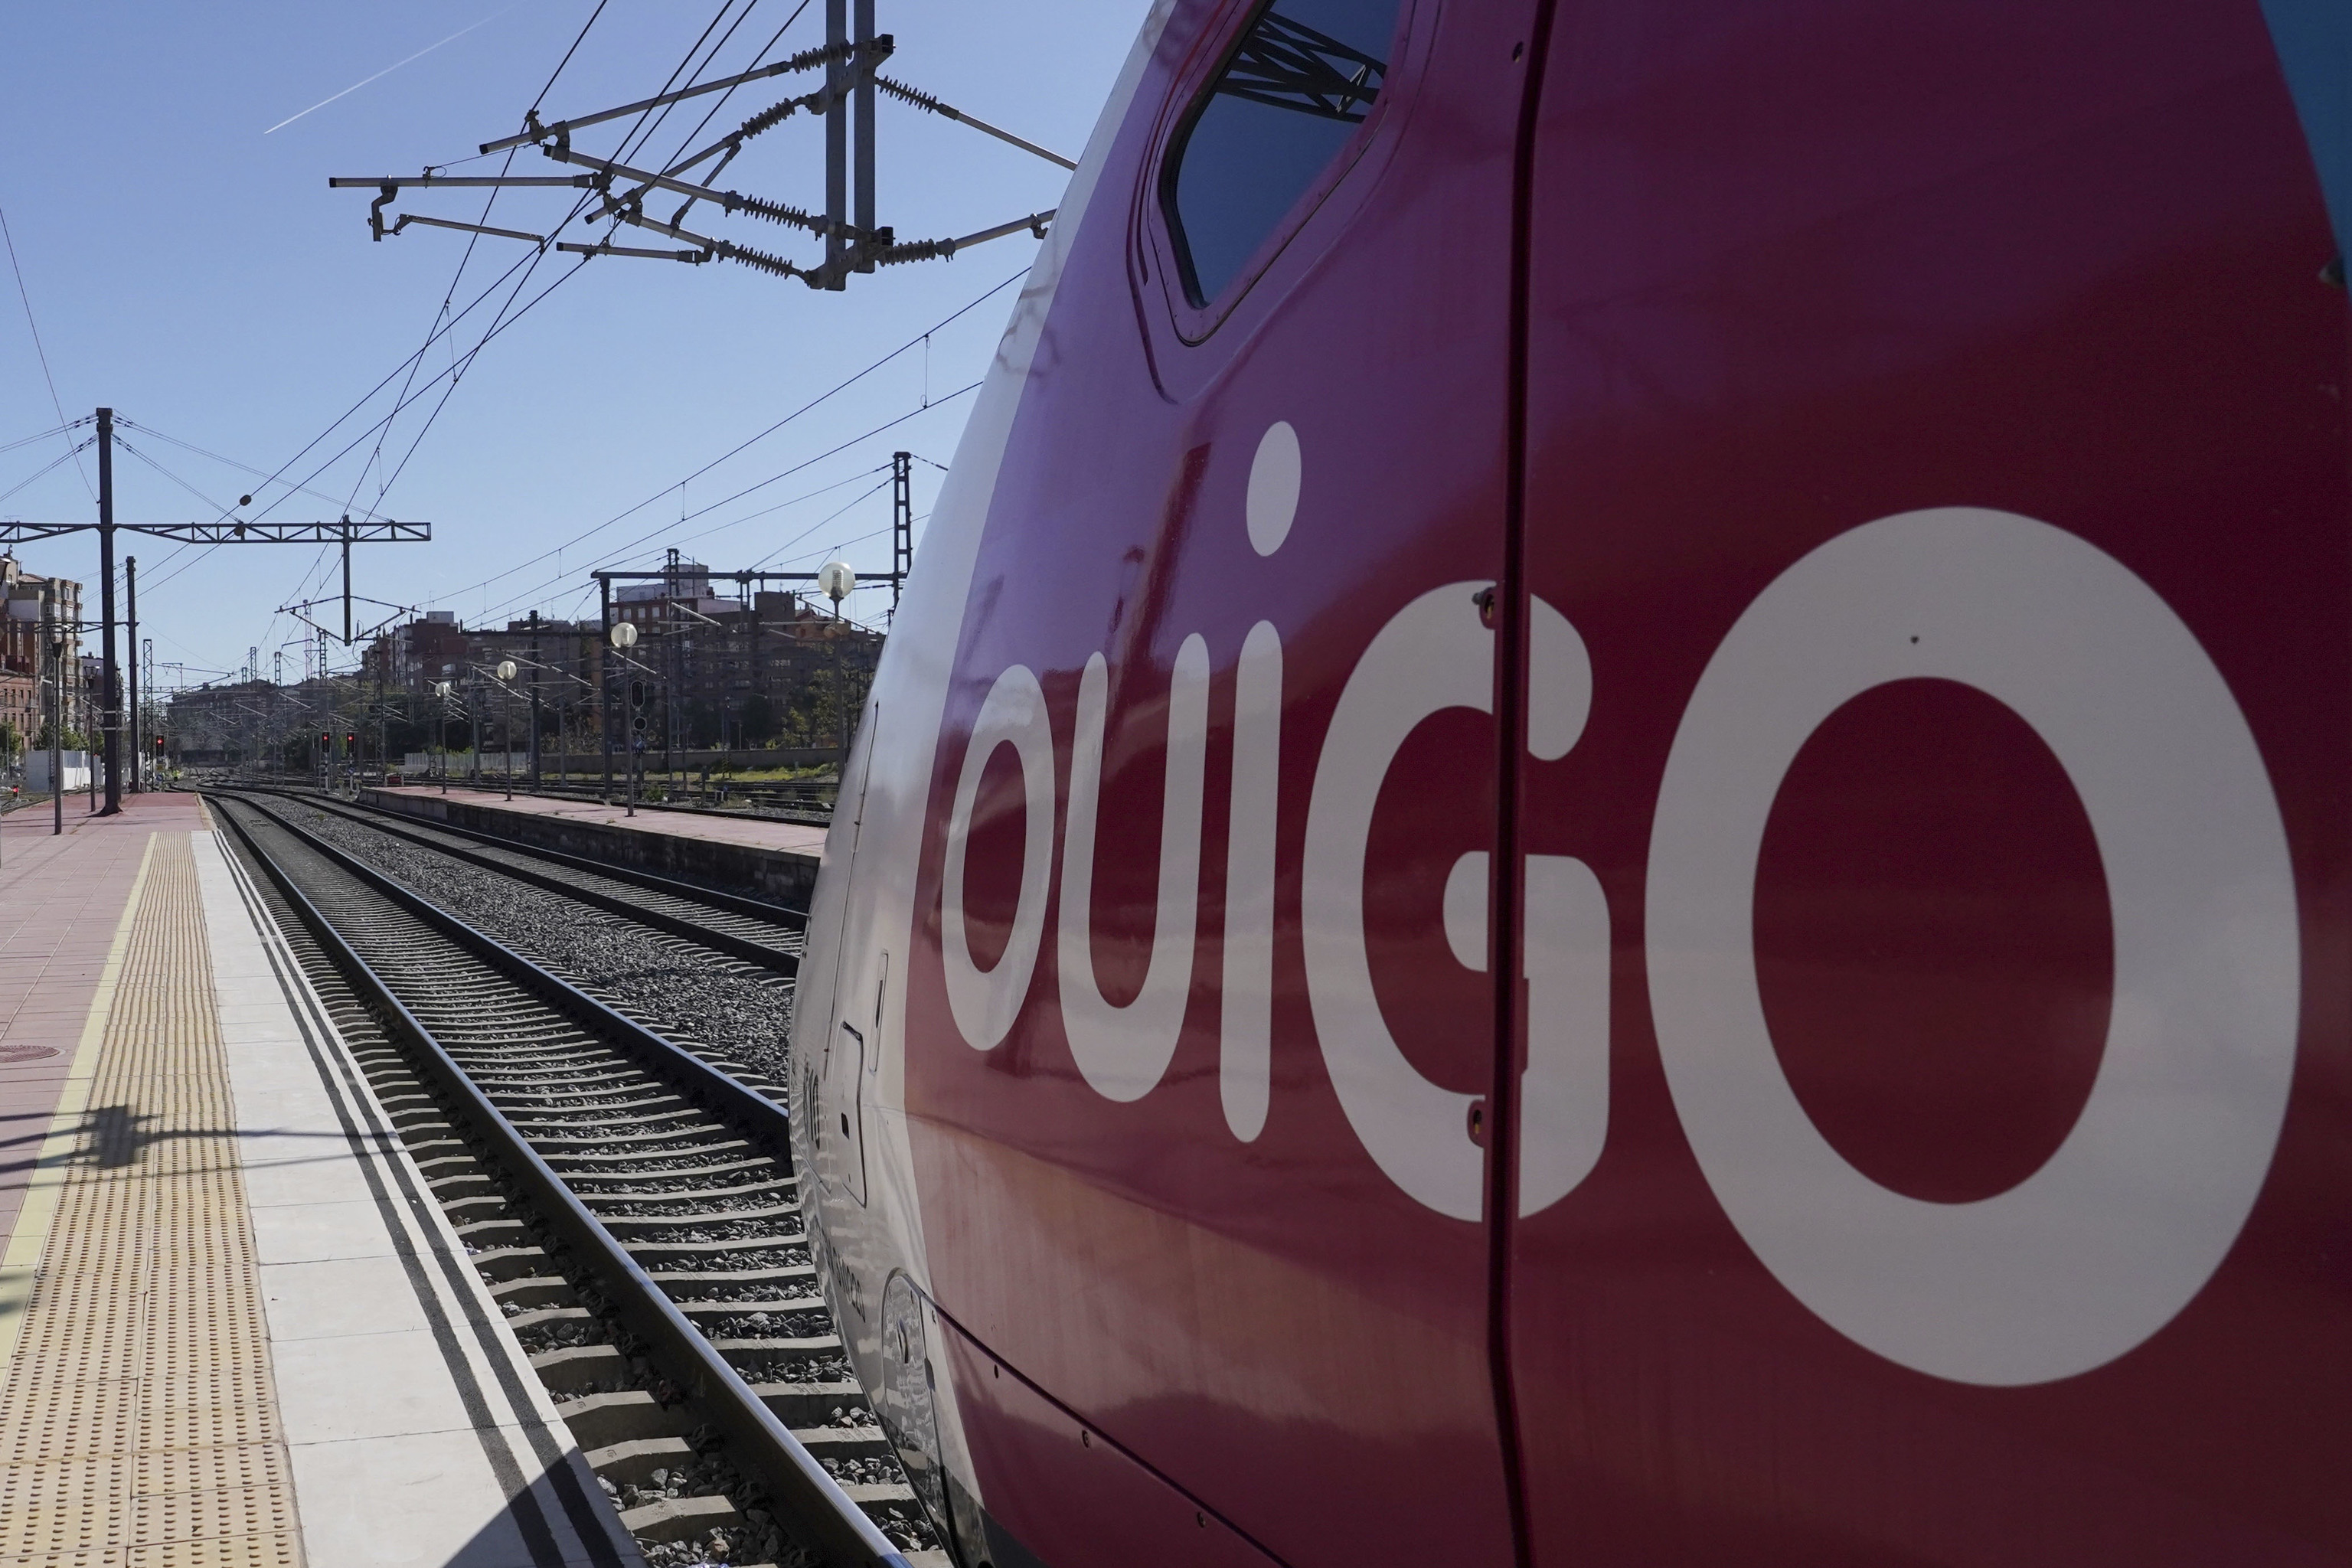 Detalle de la cabina del maquinista de la compaa francesa OUIGO, que hoy ha inaugurado el trayecto Madrid-Segovia-Valladolid